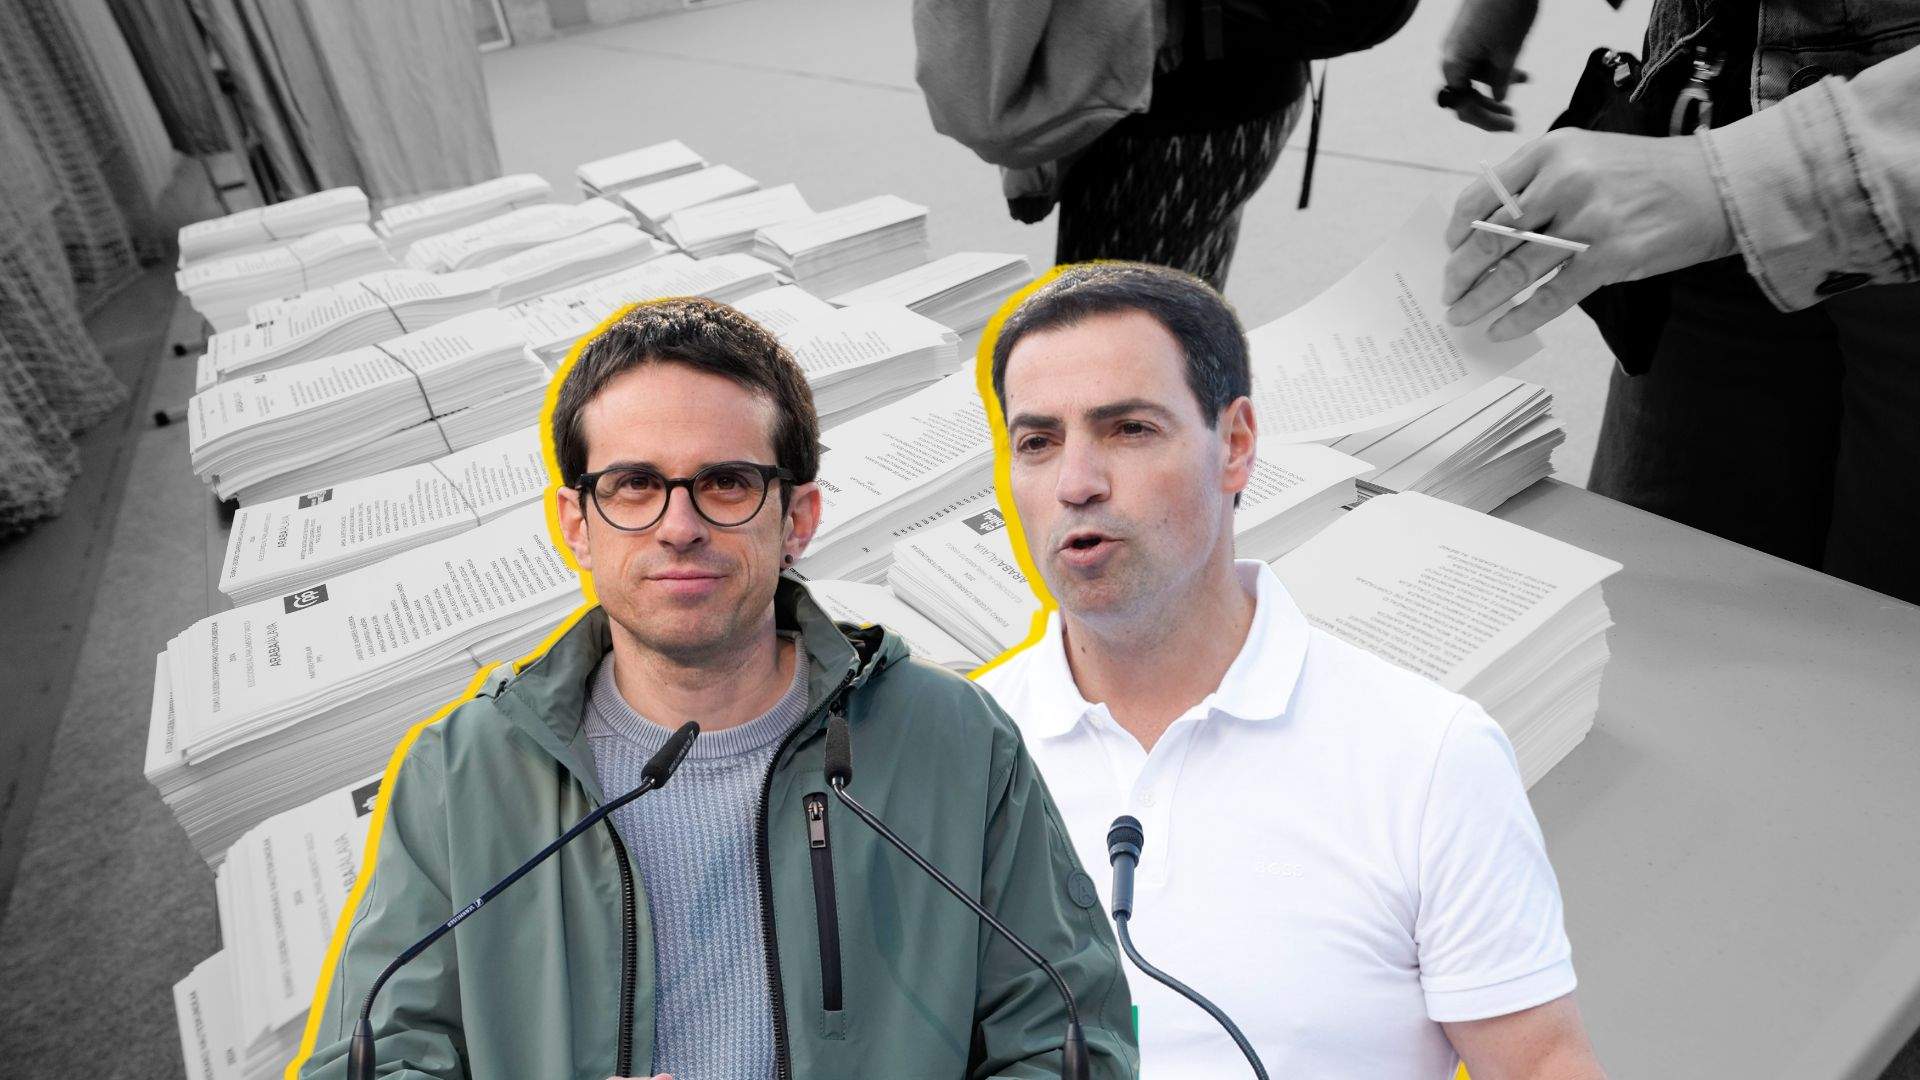 Virtual empate entre el PNV y Bildu en las elecciones vascas, según la encuesta de EITB